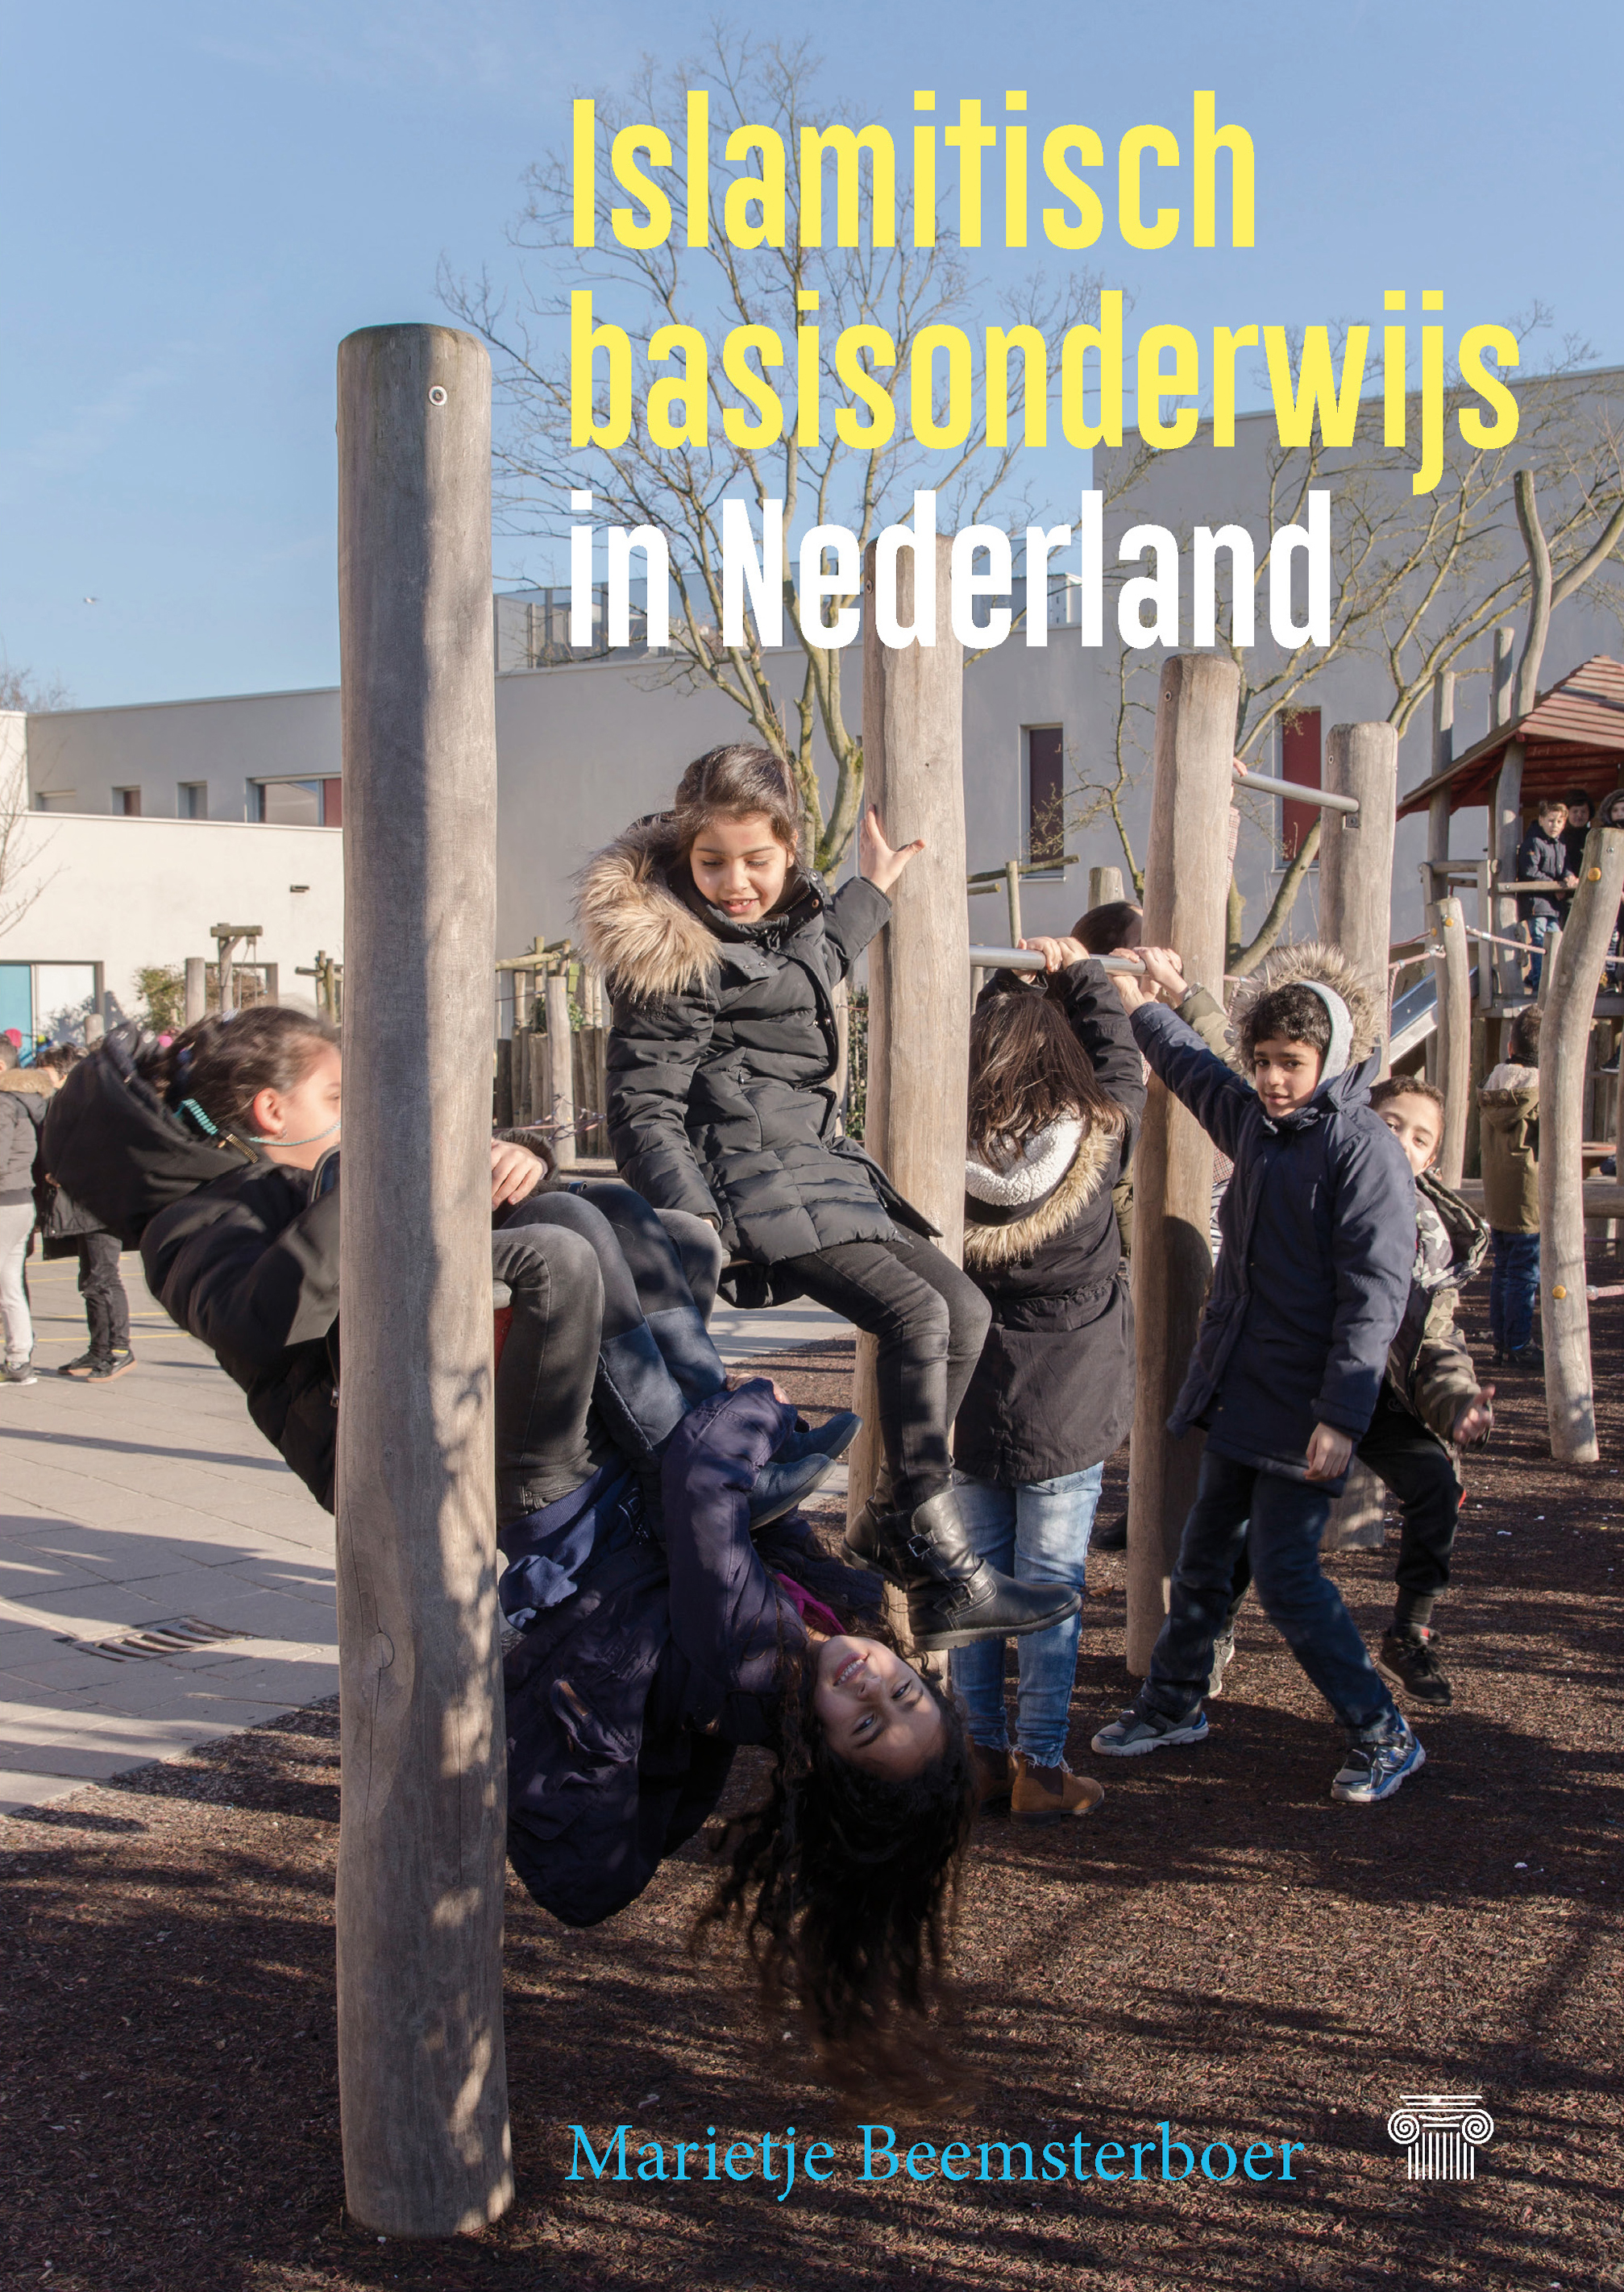 Islamitisch basisonderwijs in Nederland